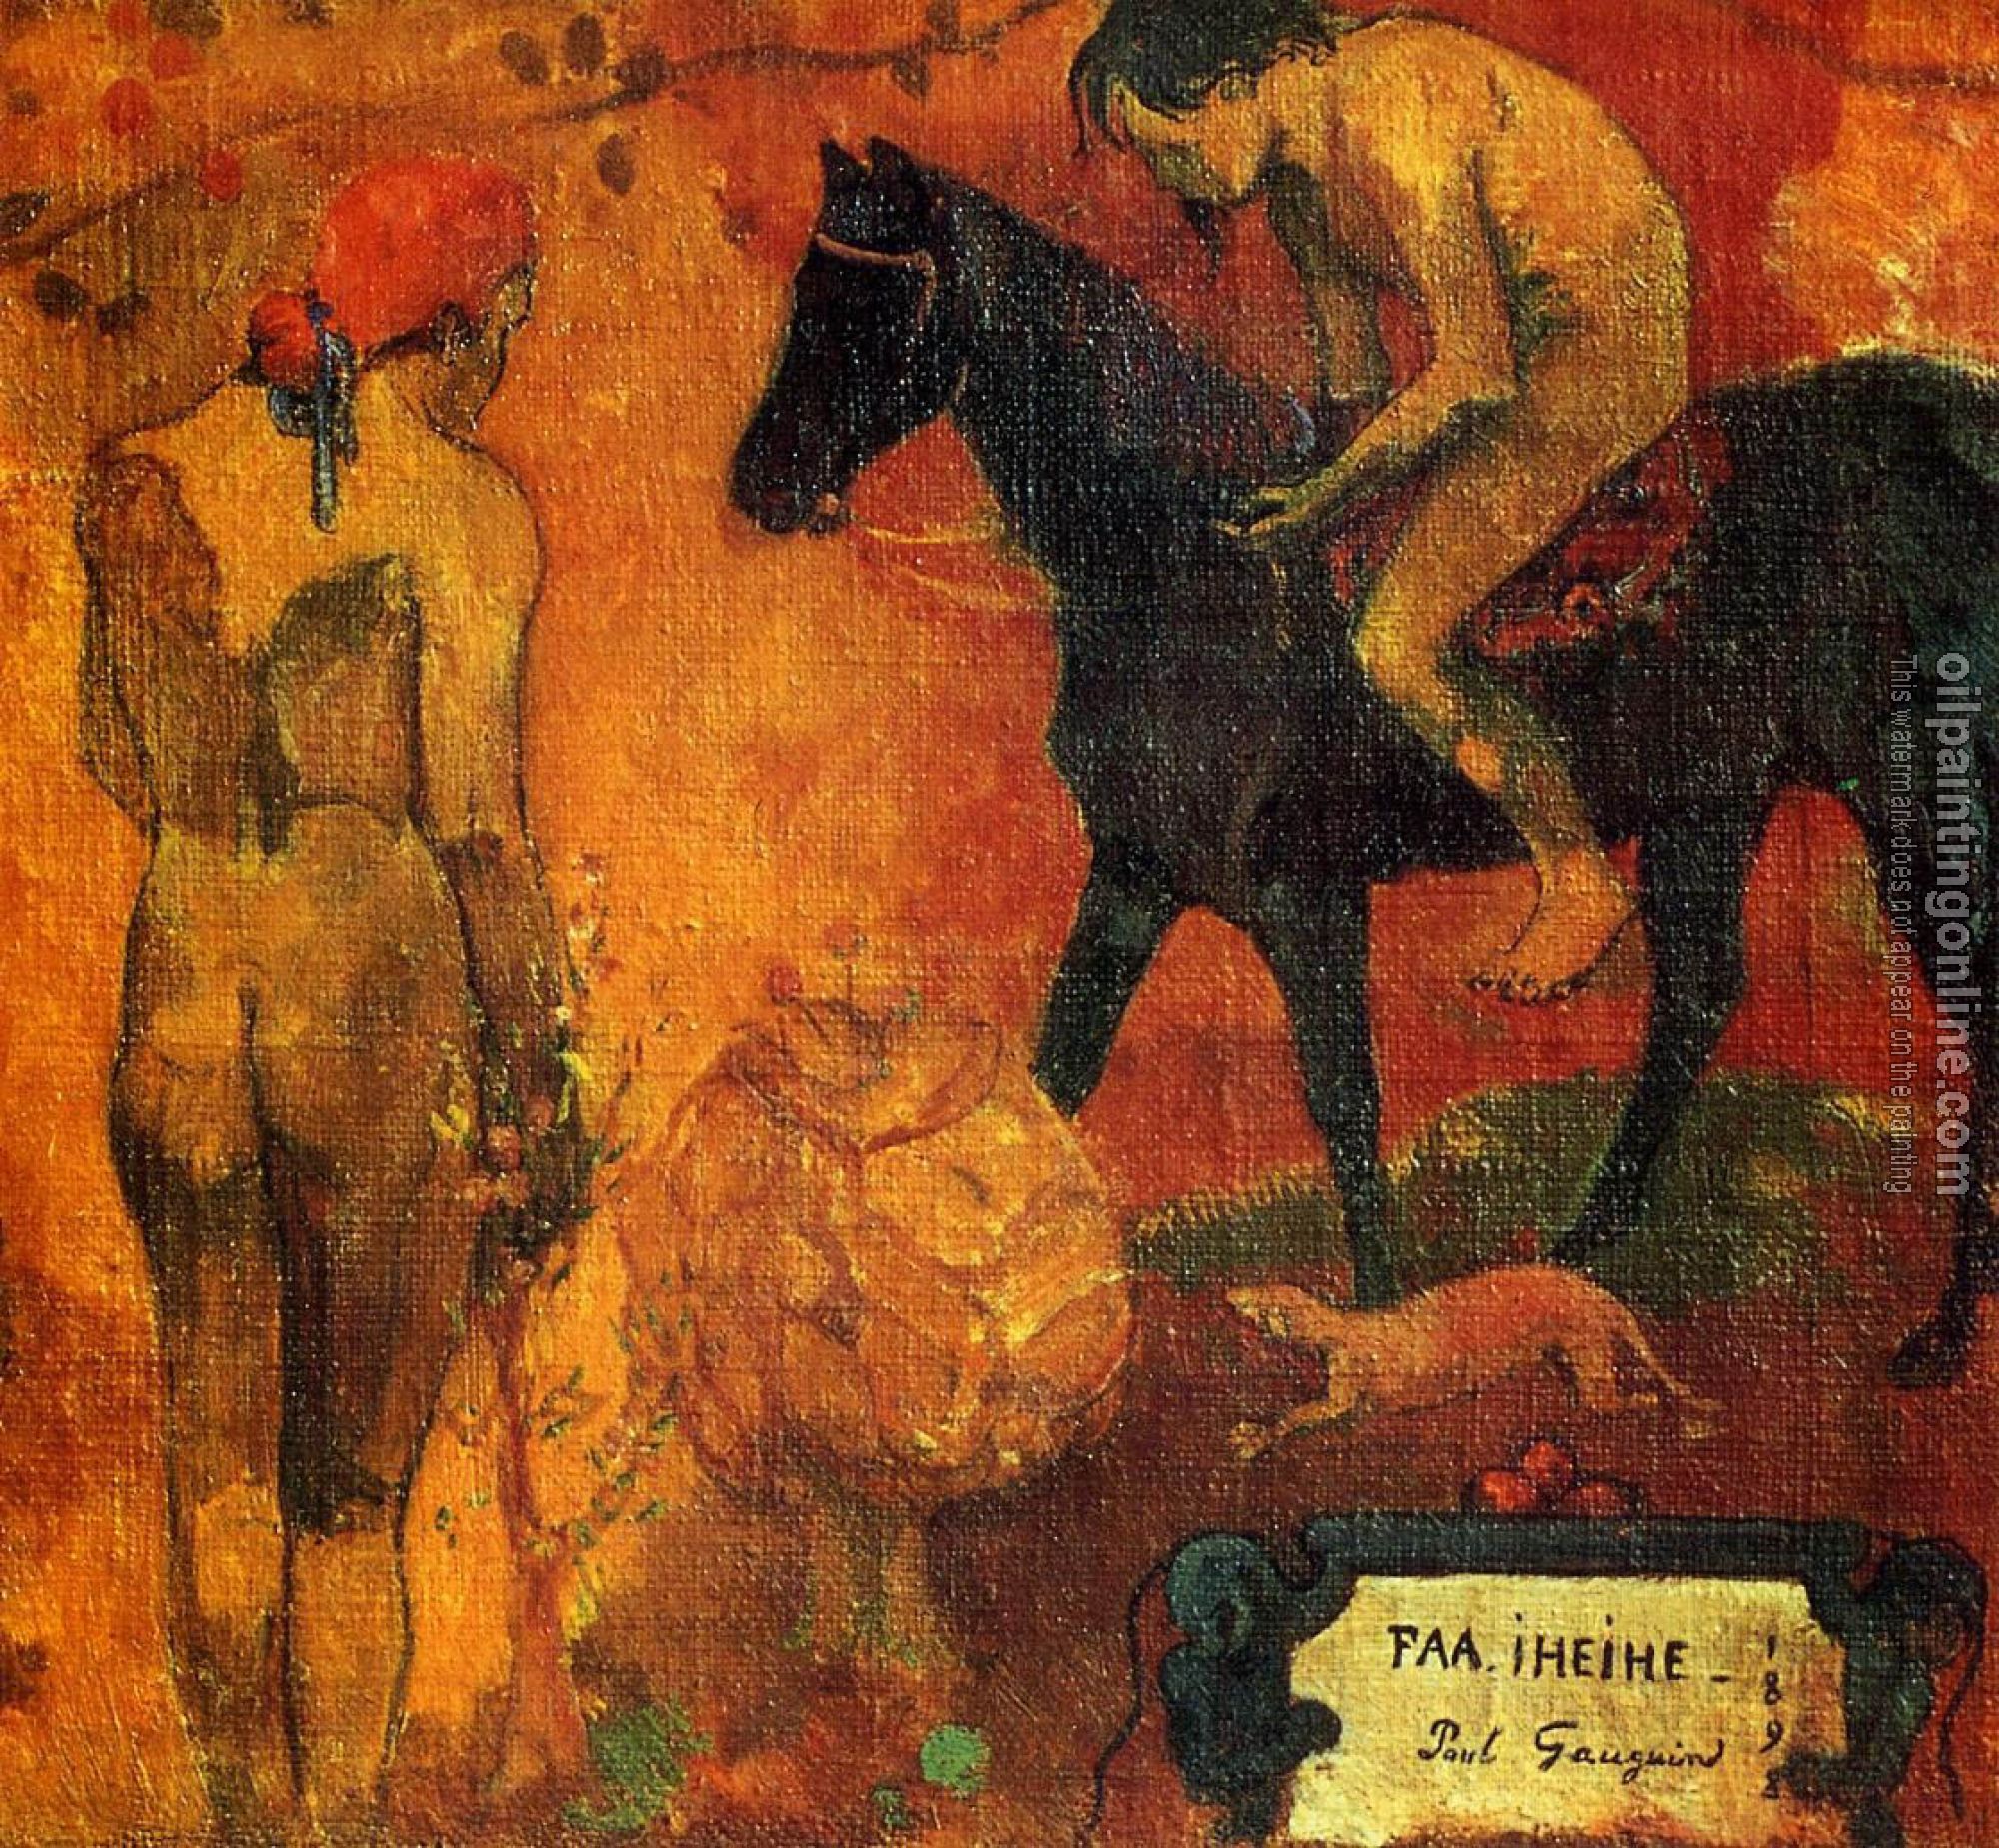 Gauguin, Paul - Tahitian Pastoral